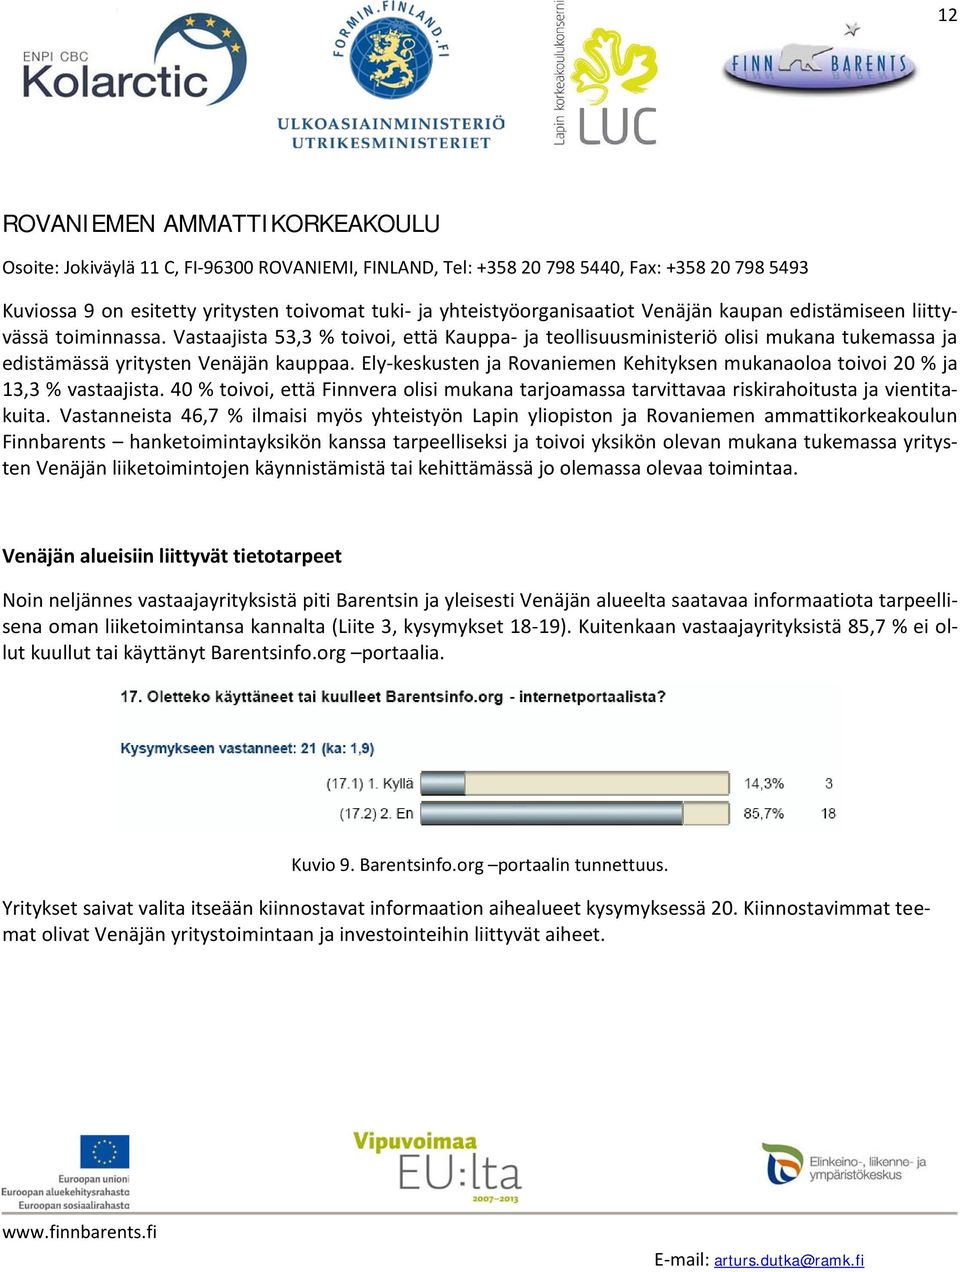 Ely-keskusten ja Rovaniemen Kehityksen mukanaoloa toivoi 20 % ja 13,3 % vastaajista. 40 % toivoi, että Finnvera olisi mukana tarjoamassa tarvittavaa riskirahoitusta ja vientitakuita.